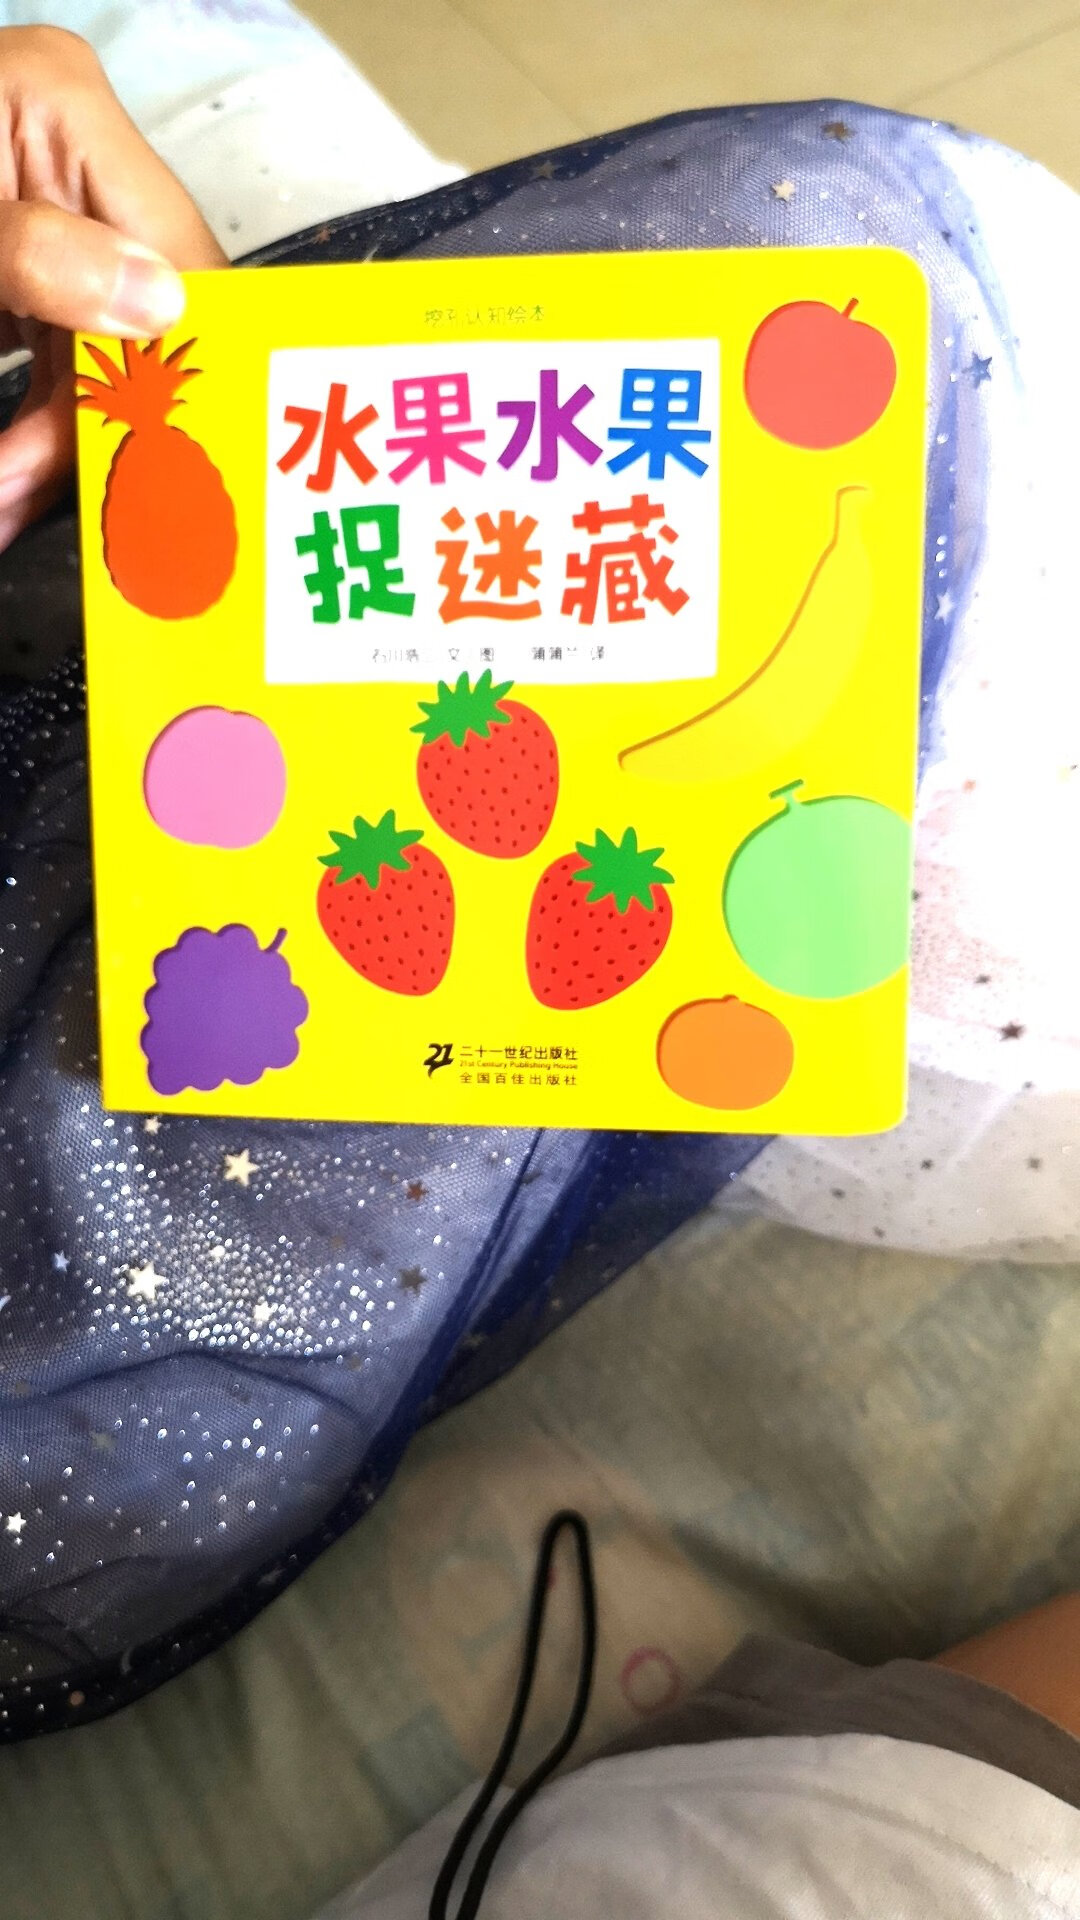 小书不错，对宝宝识别各种水果各种颜色有帮助，纸的质量也不错，不容易被撕掉，非常好。